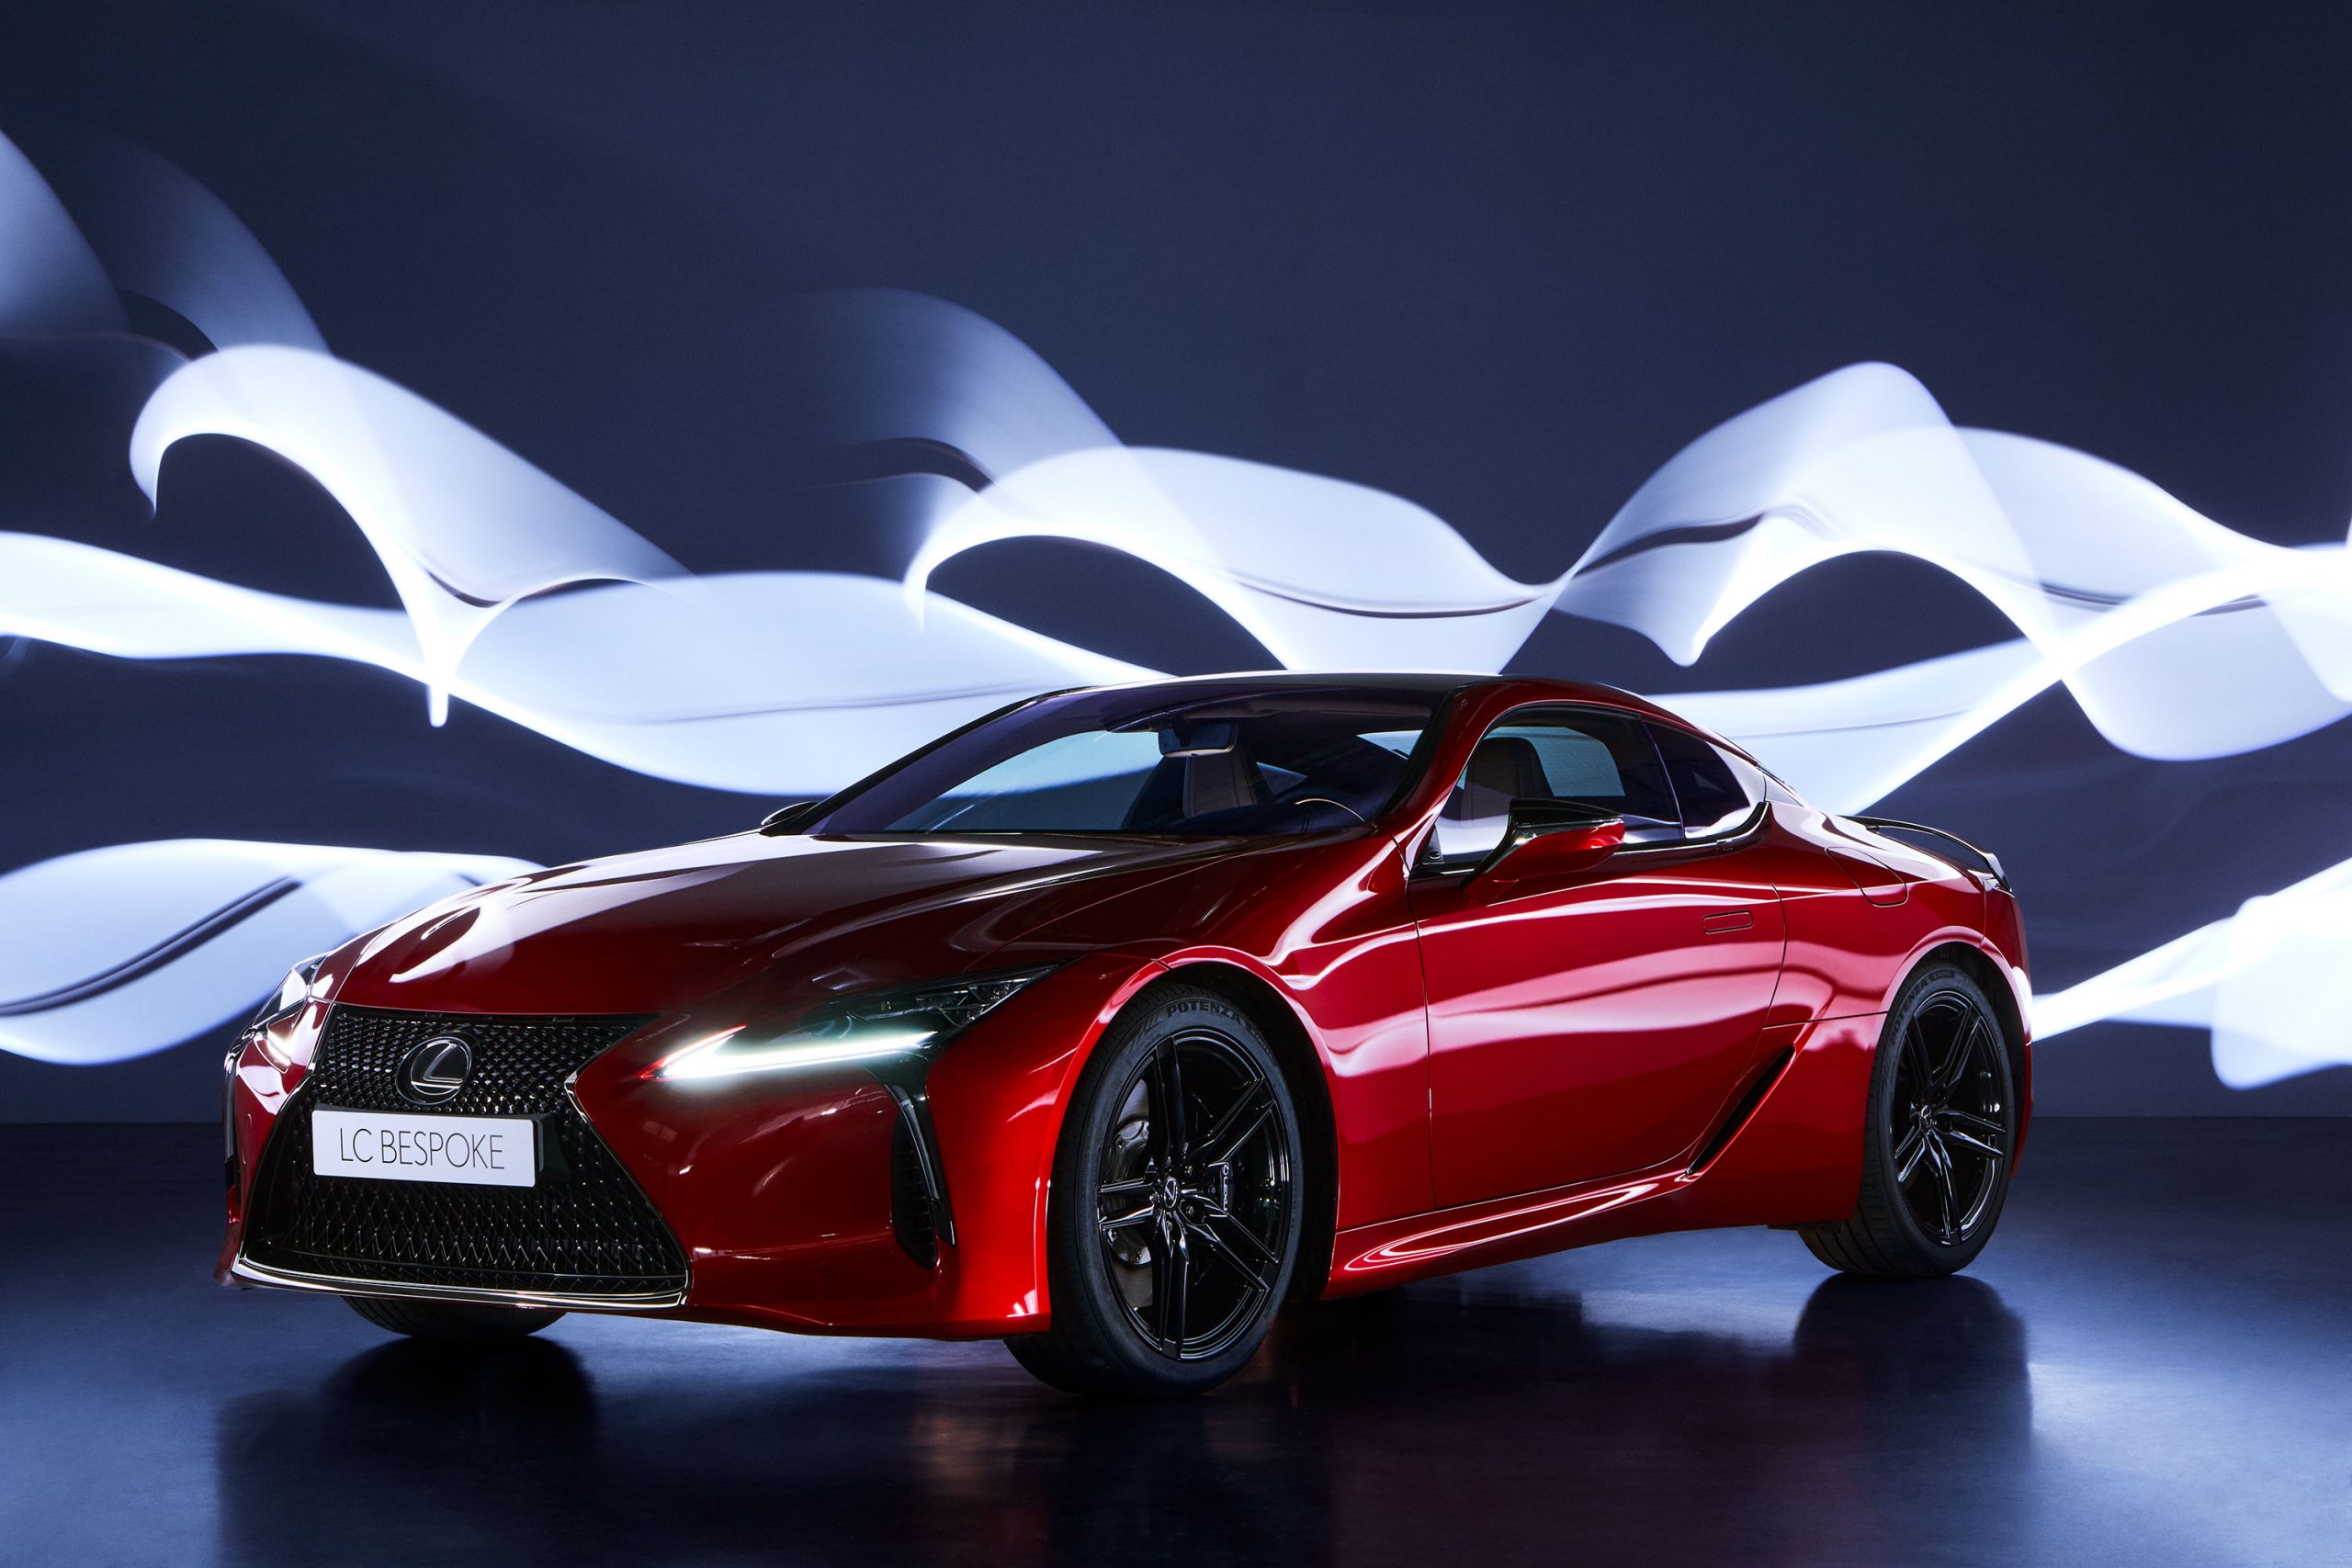 Galería: Lexus Presenta el Nuevo LC 500 Bespoke Carbon